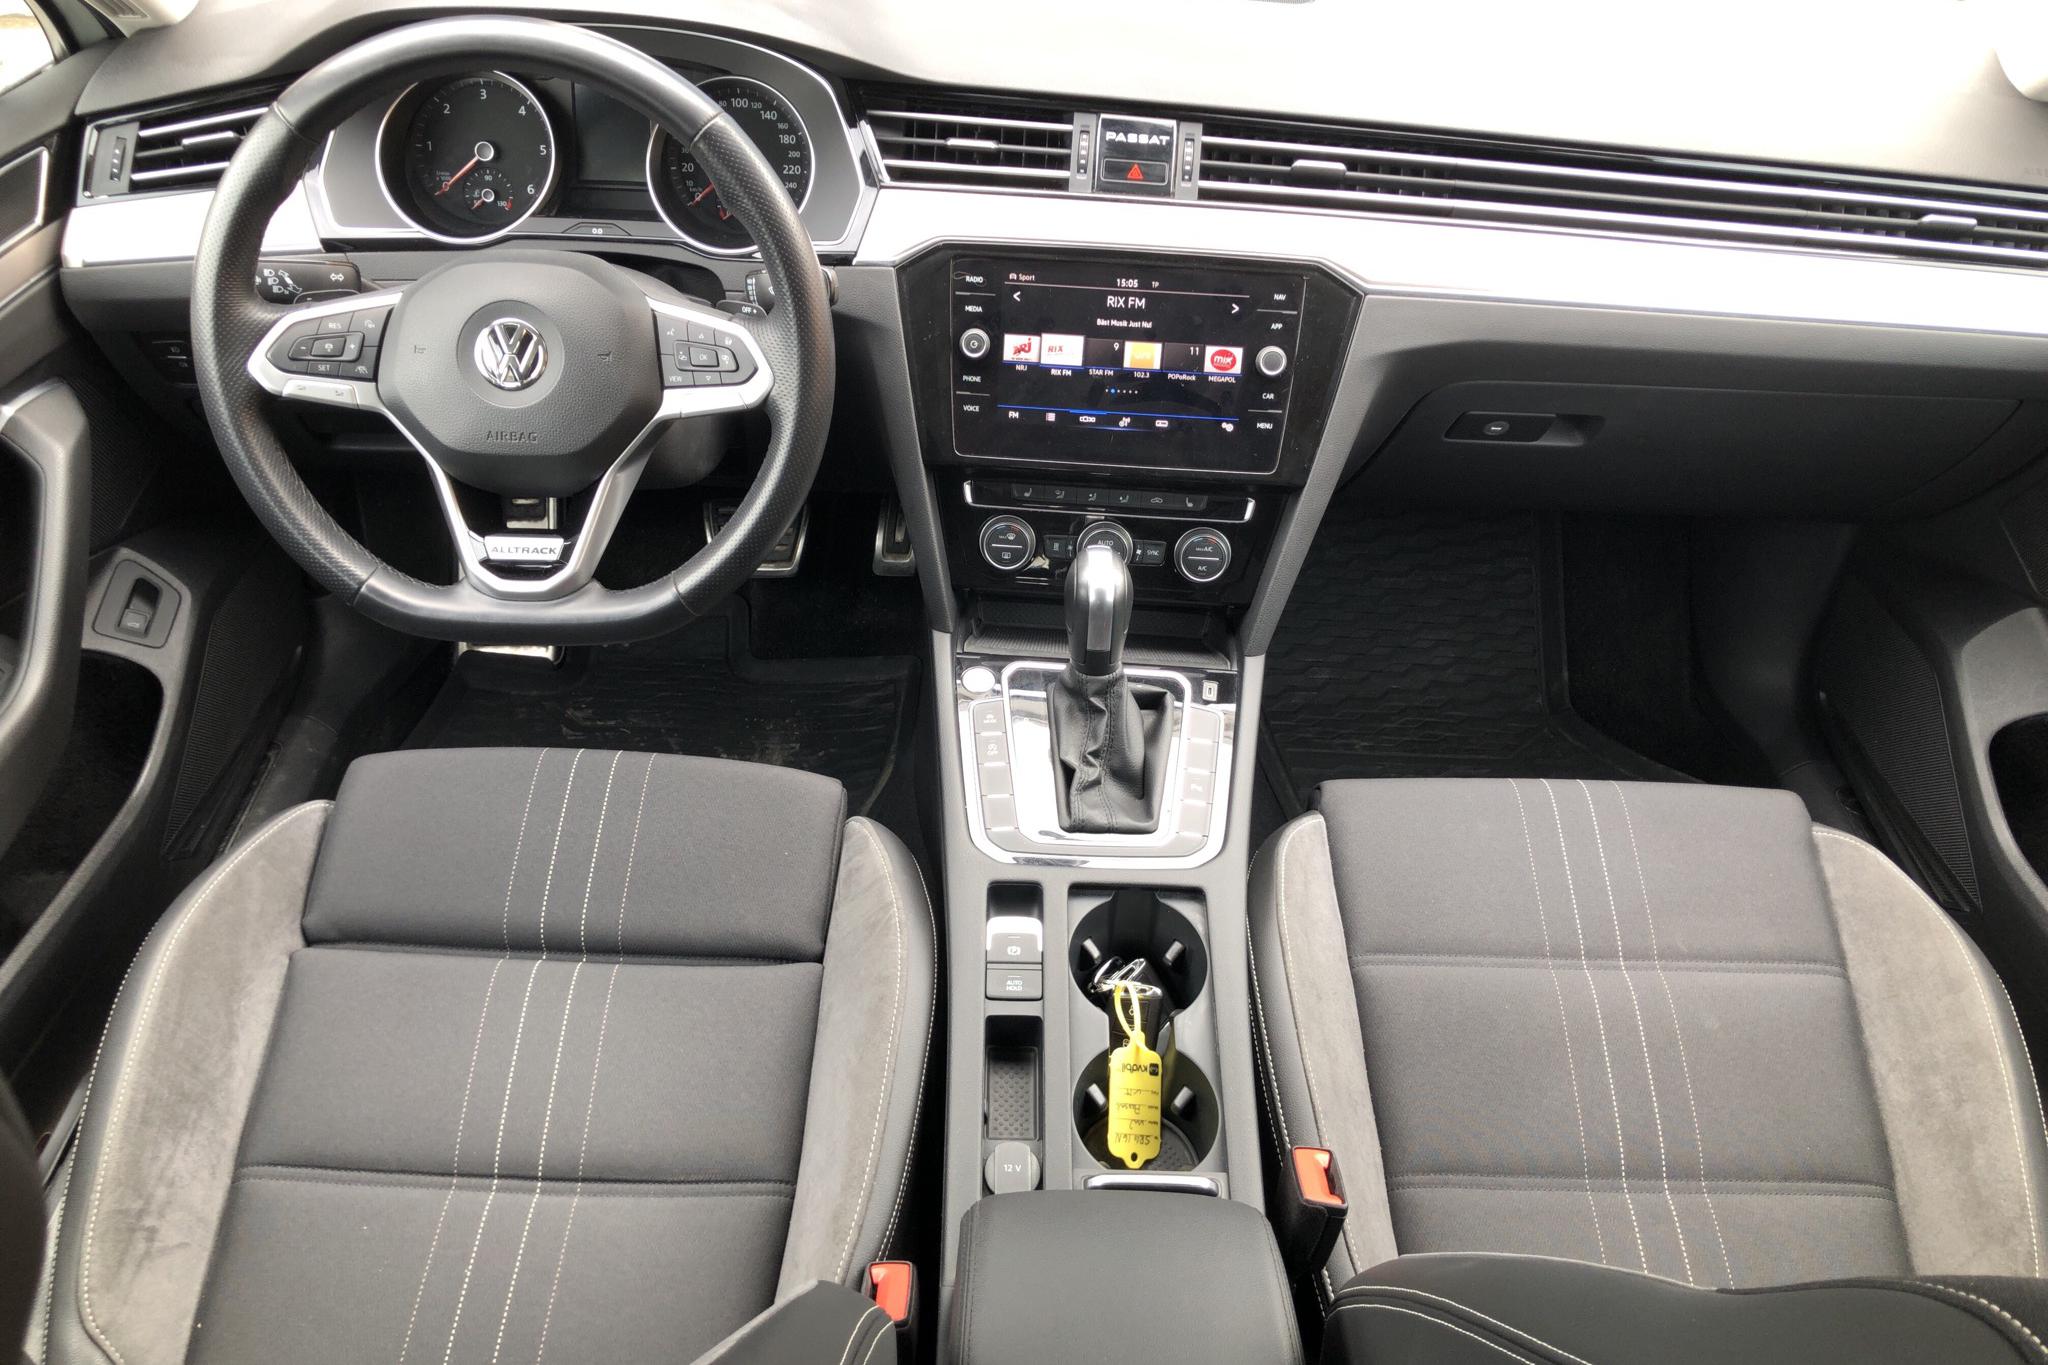 VW Passat 2.0 TDI Alltrack 4MOTION (190hk) - 52 390 km - Automatic - white - 2020